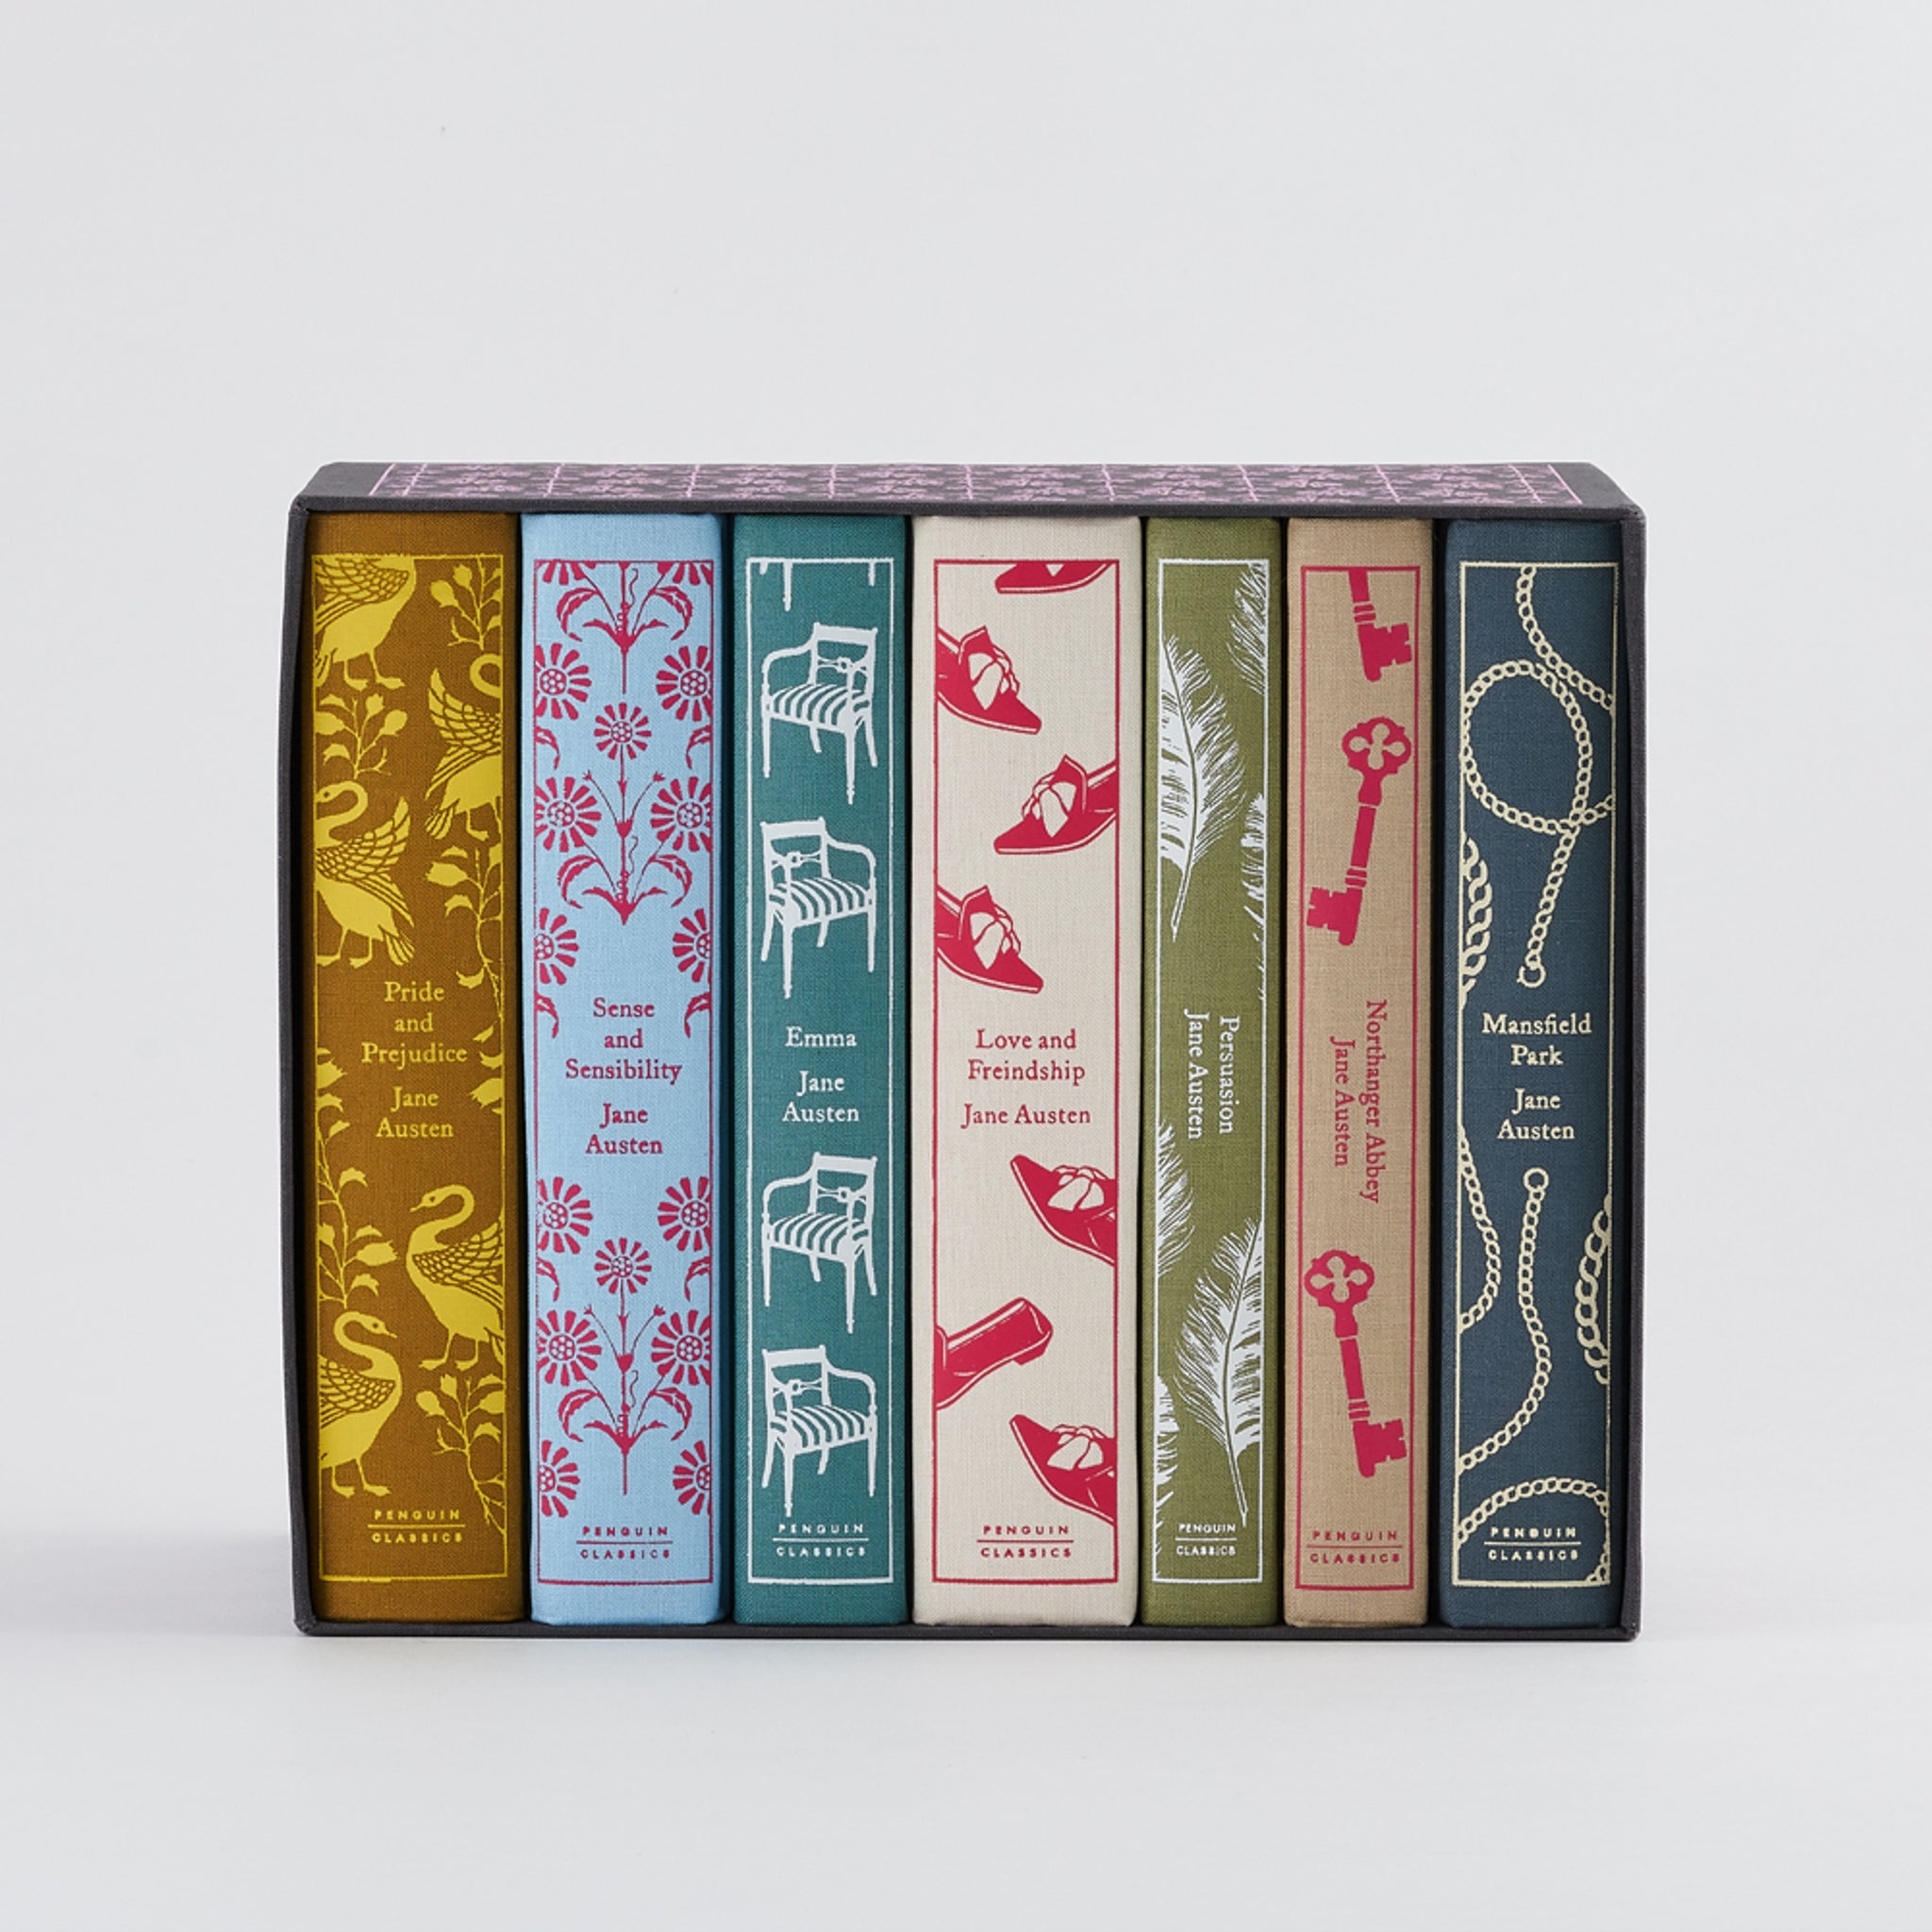 Jane Austen: The Complete Works Boxed Set – Penguin Shop